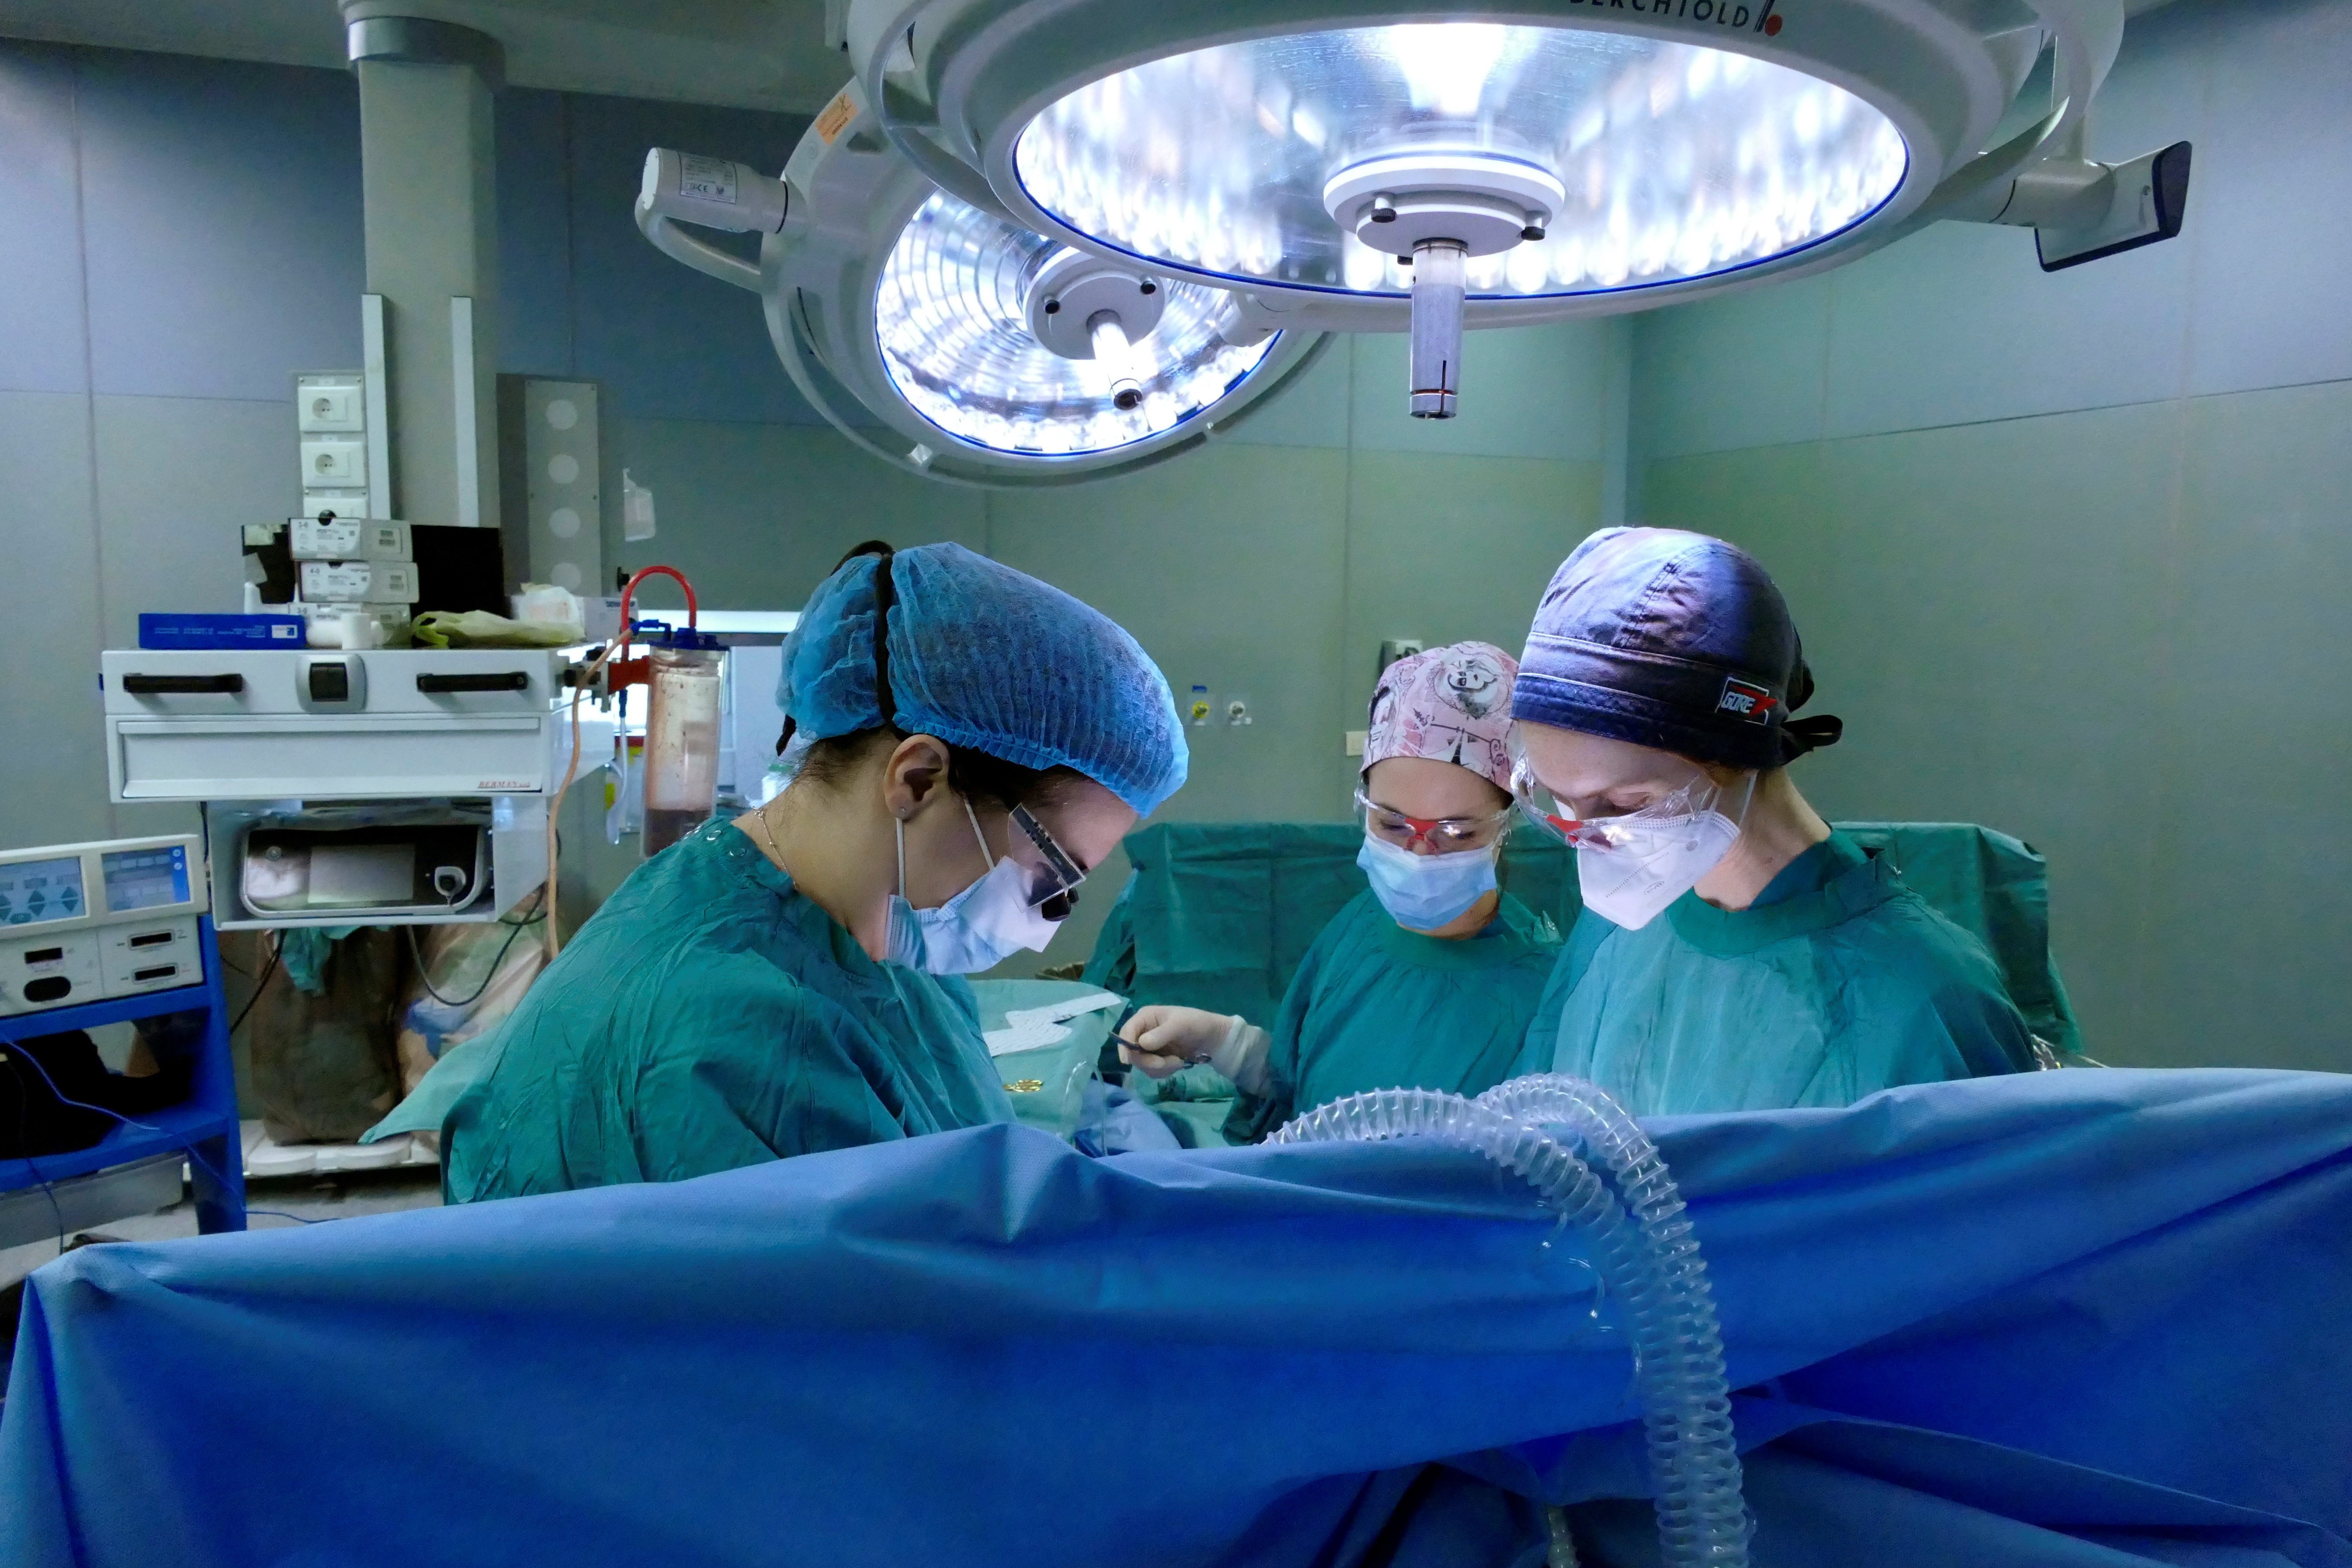 La cirugía tiene una duración de entre 5 y 8 horas, lapso que dependerá de las complejidades técnicas y médicas que se planteen durante la intervención
EFE/ Universidad De La Sapienza De Roma
